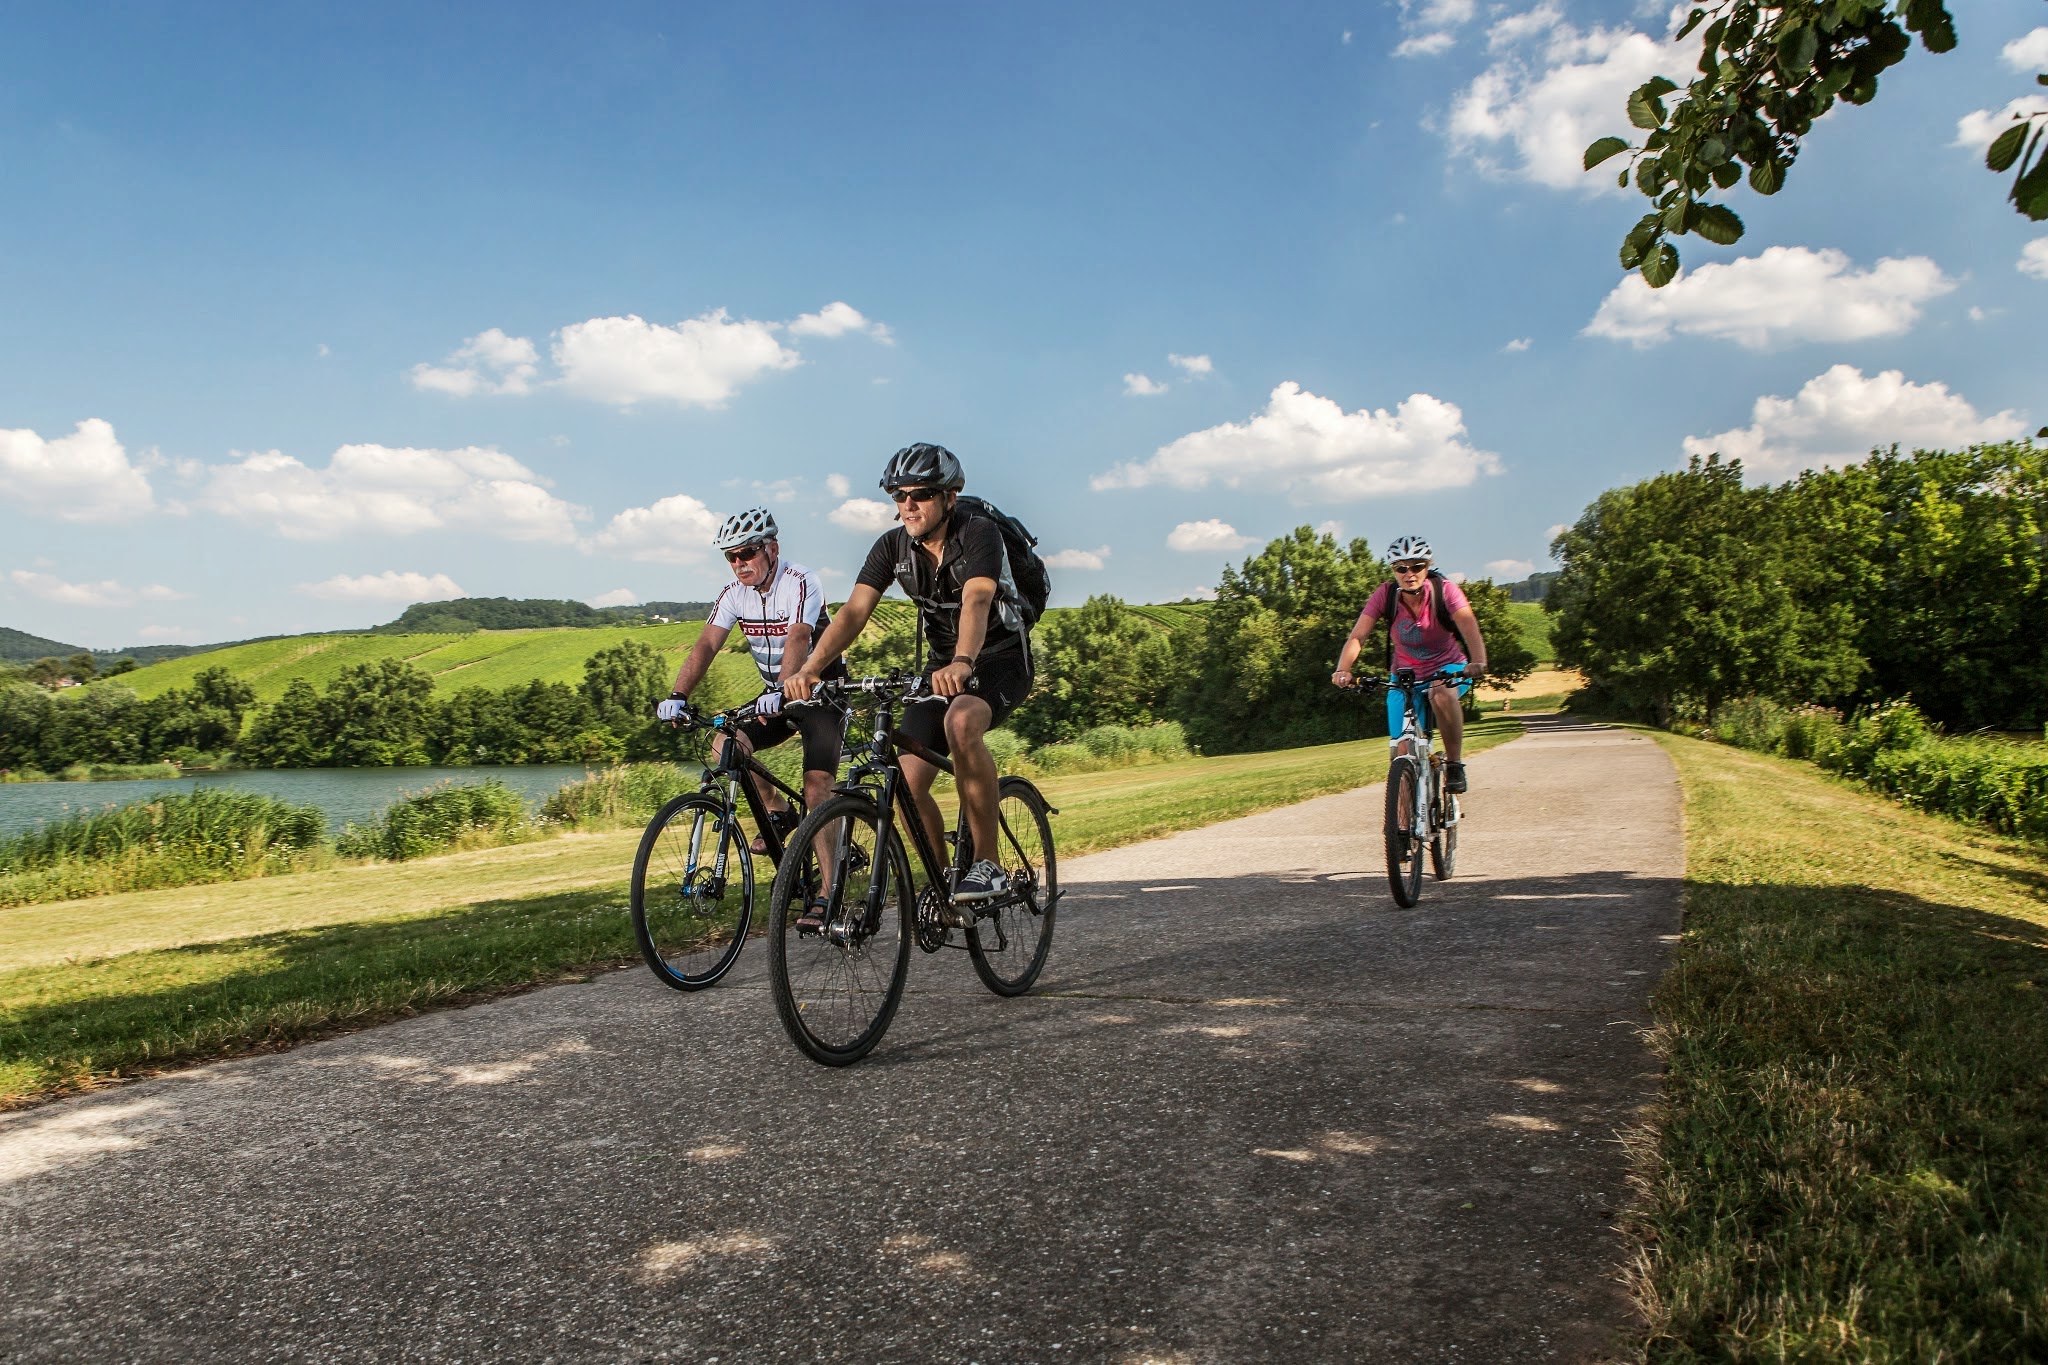 Mit dem Rad on Tour: Fahrradtouren und mehr durch Stuttgart - Teaser RaDfahren Bawu.jpg